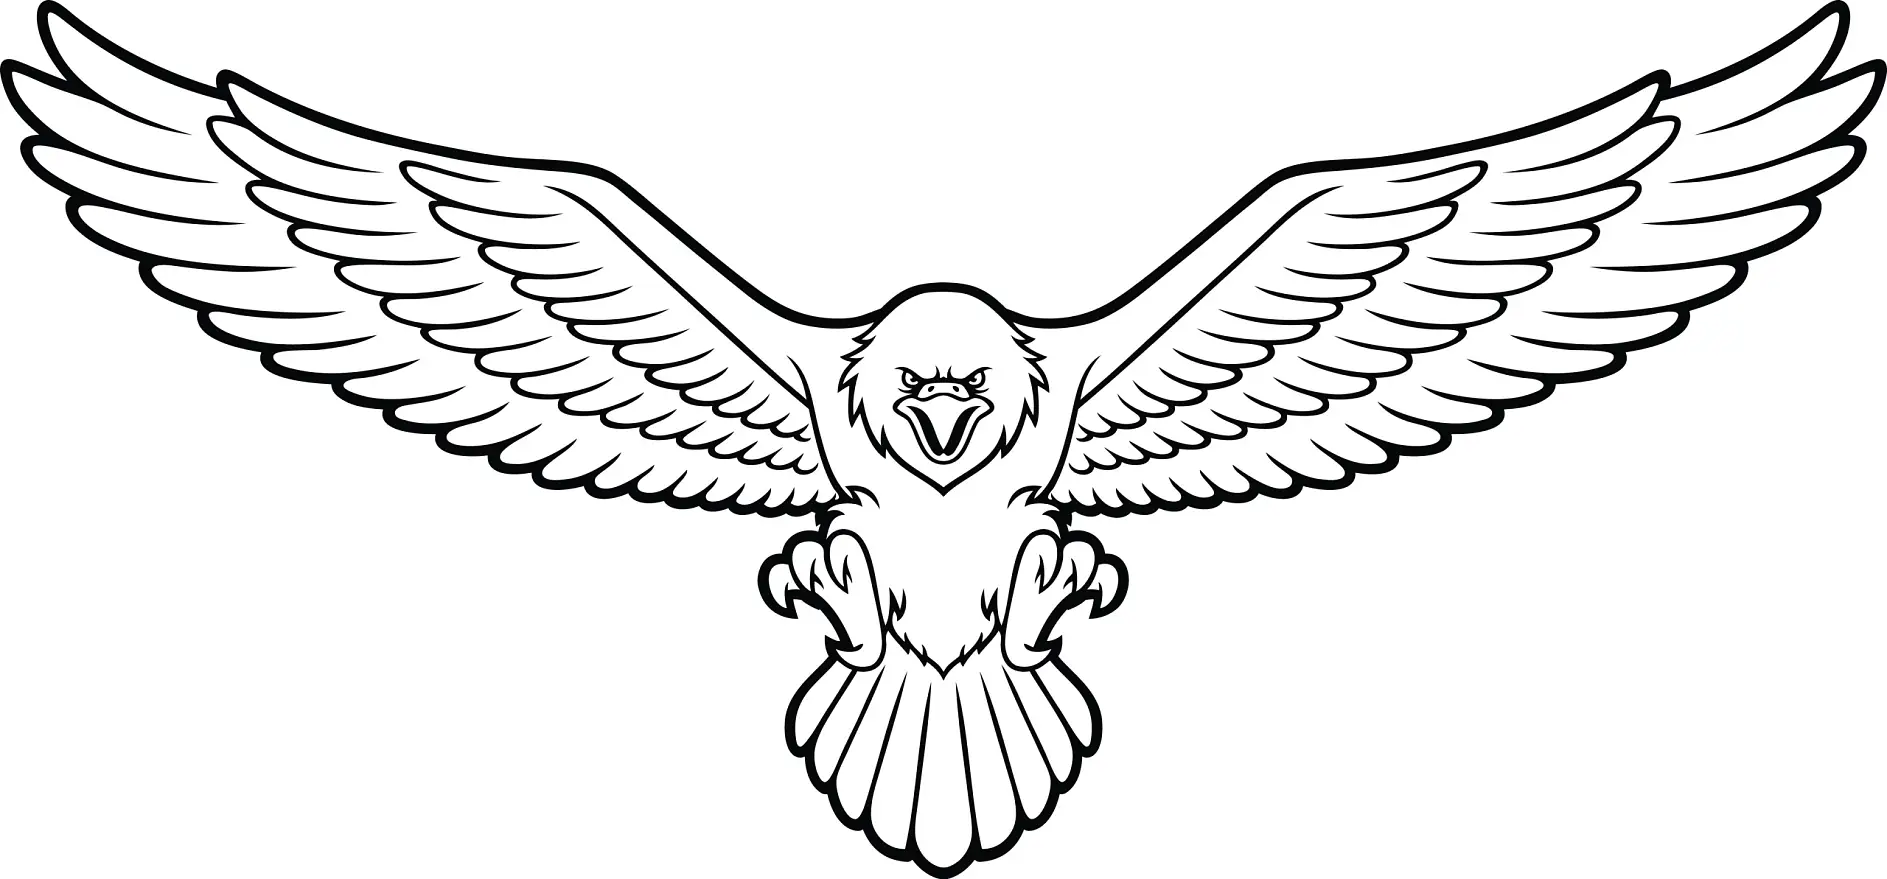 Ausmalbild Adler mit ausgebreiteten Flügeln im Flug